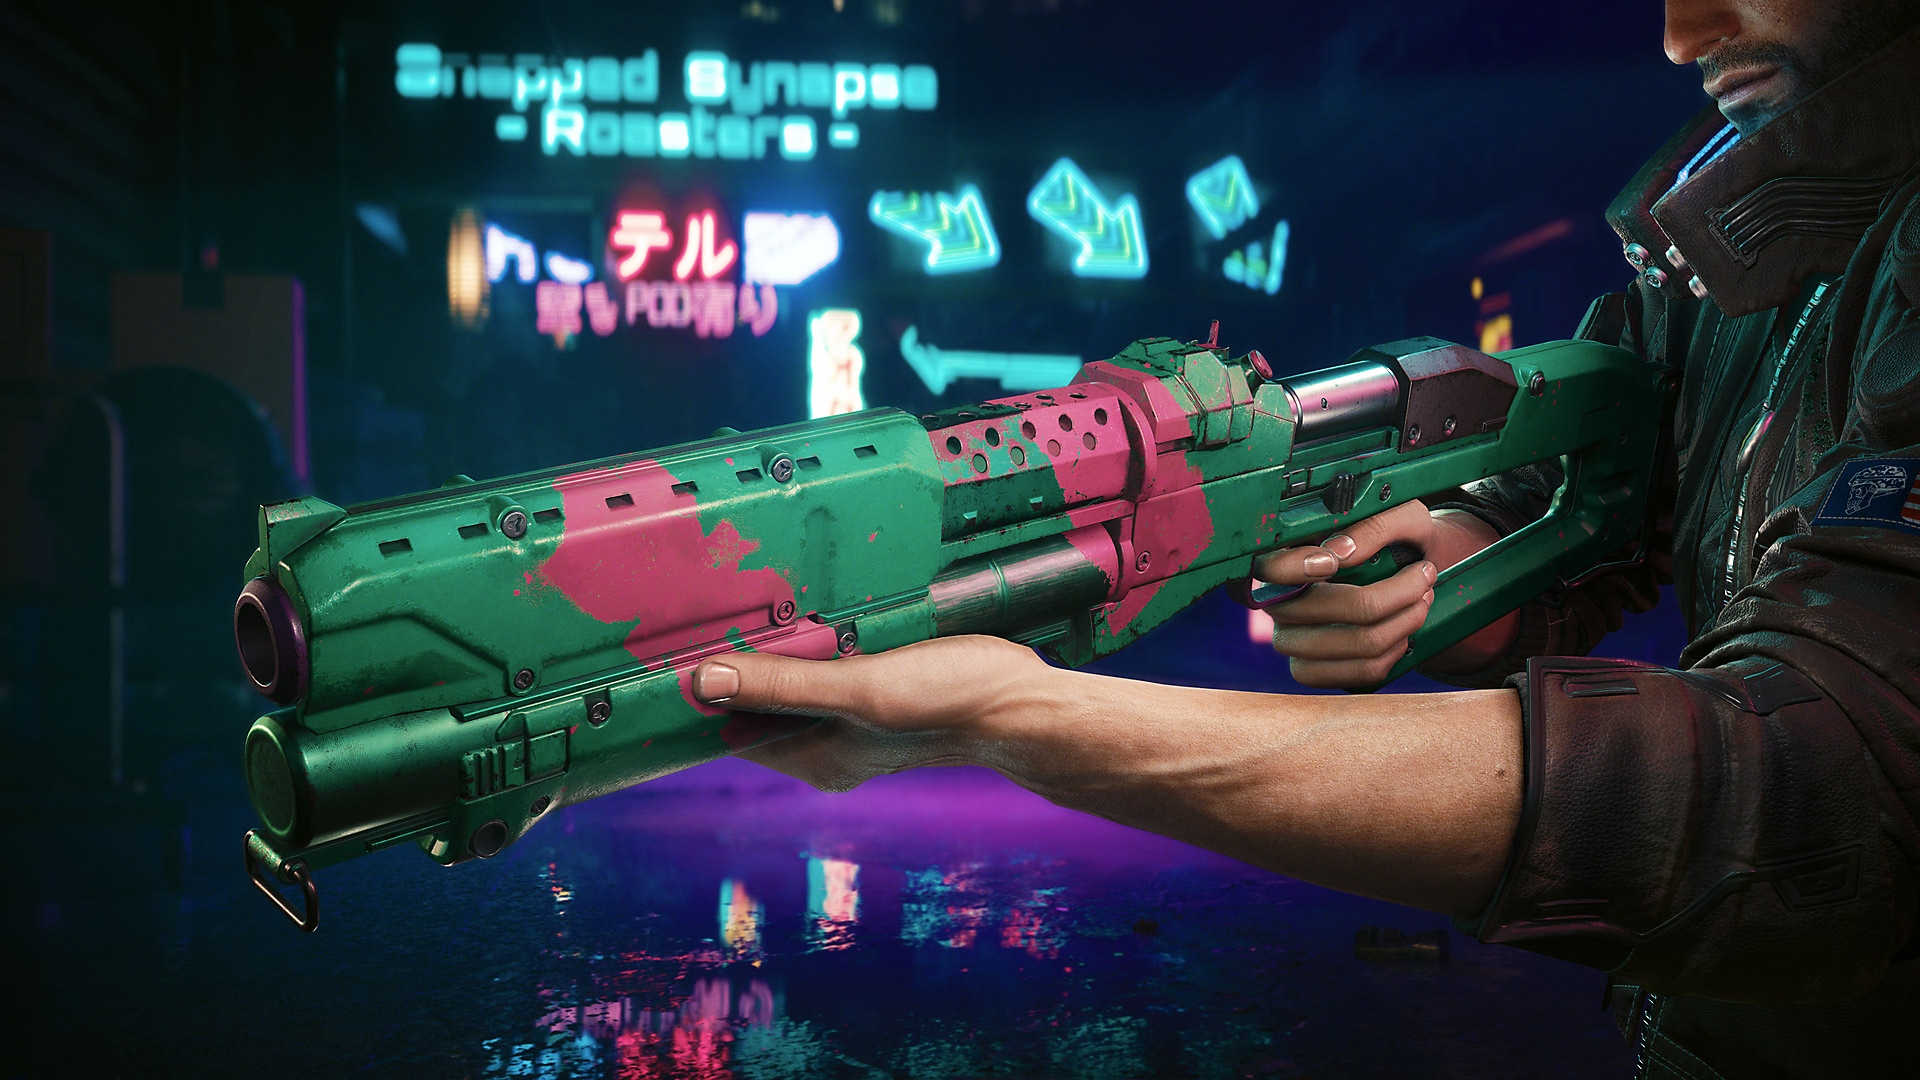 Actualización de Cyberpunk 2077: Edgerunners que muestra un rifle verde y rosa